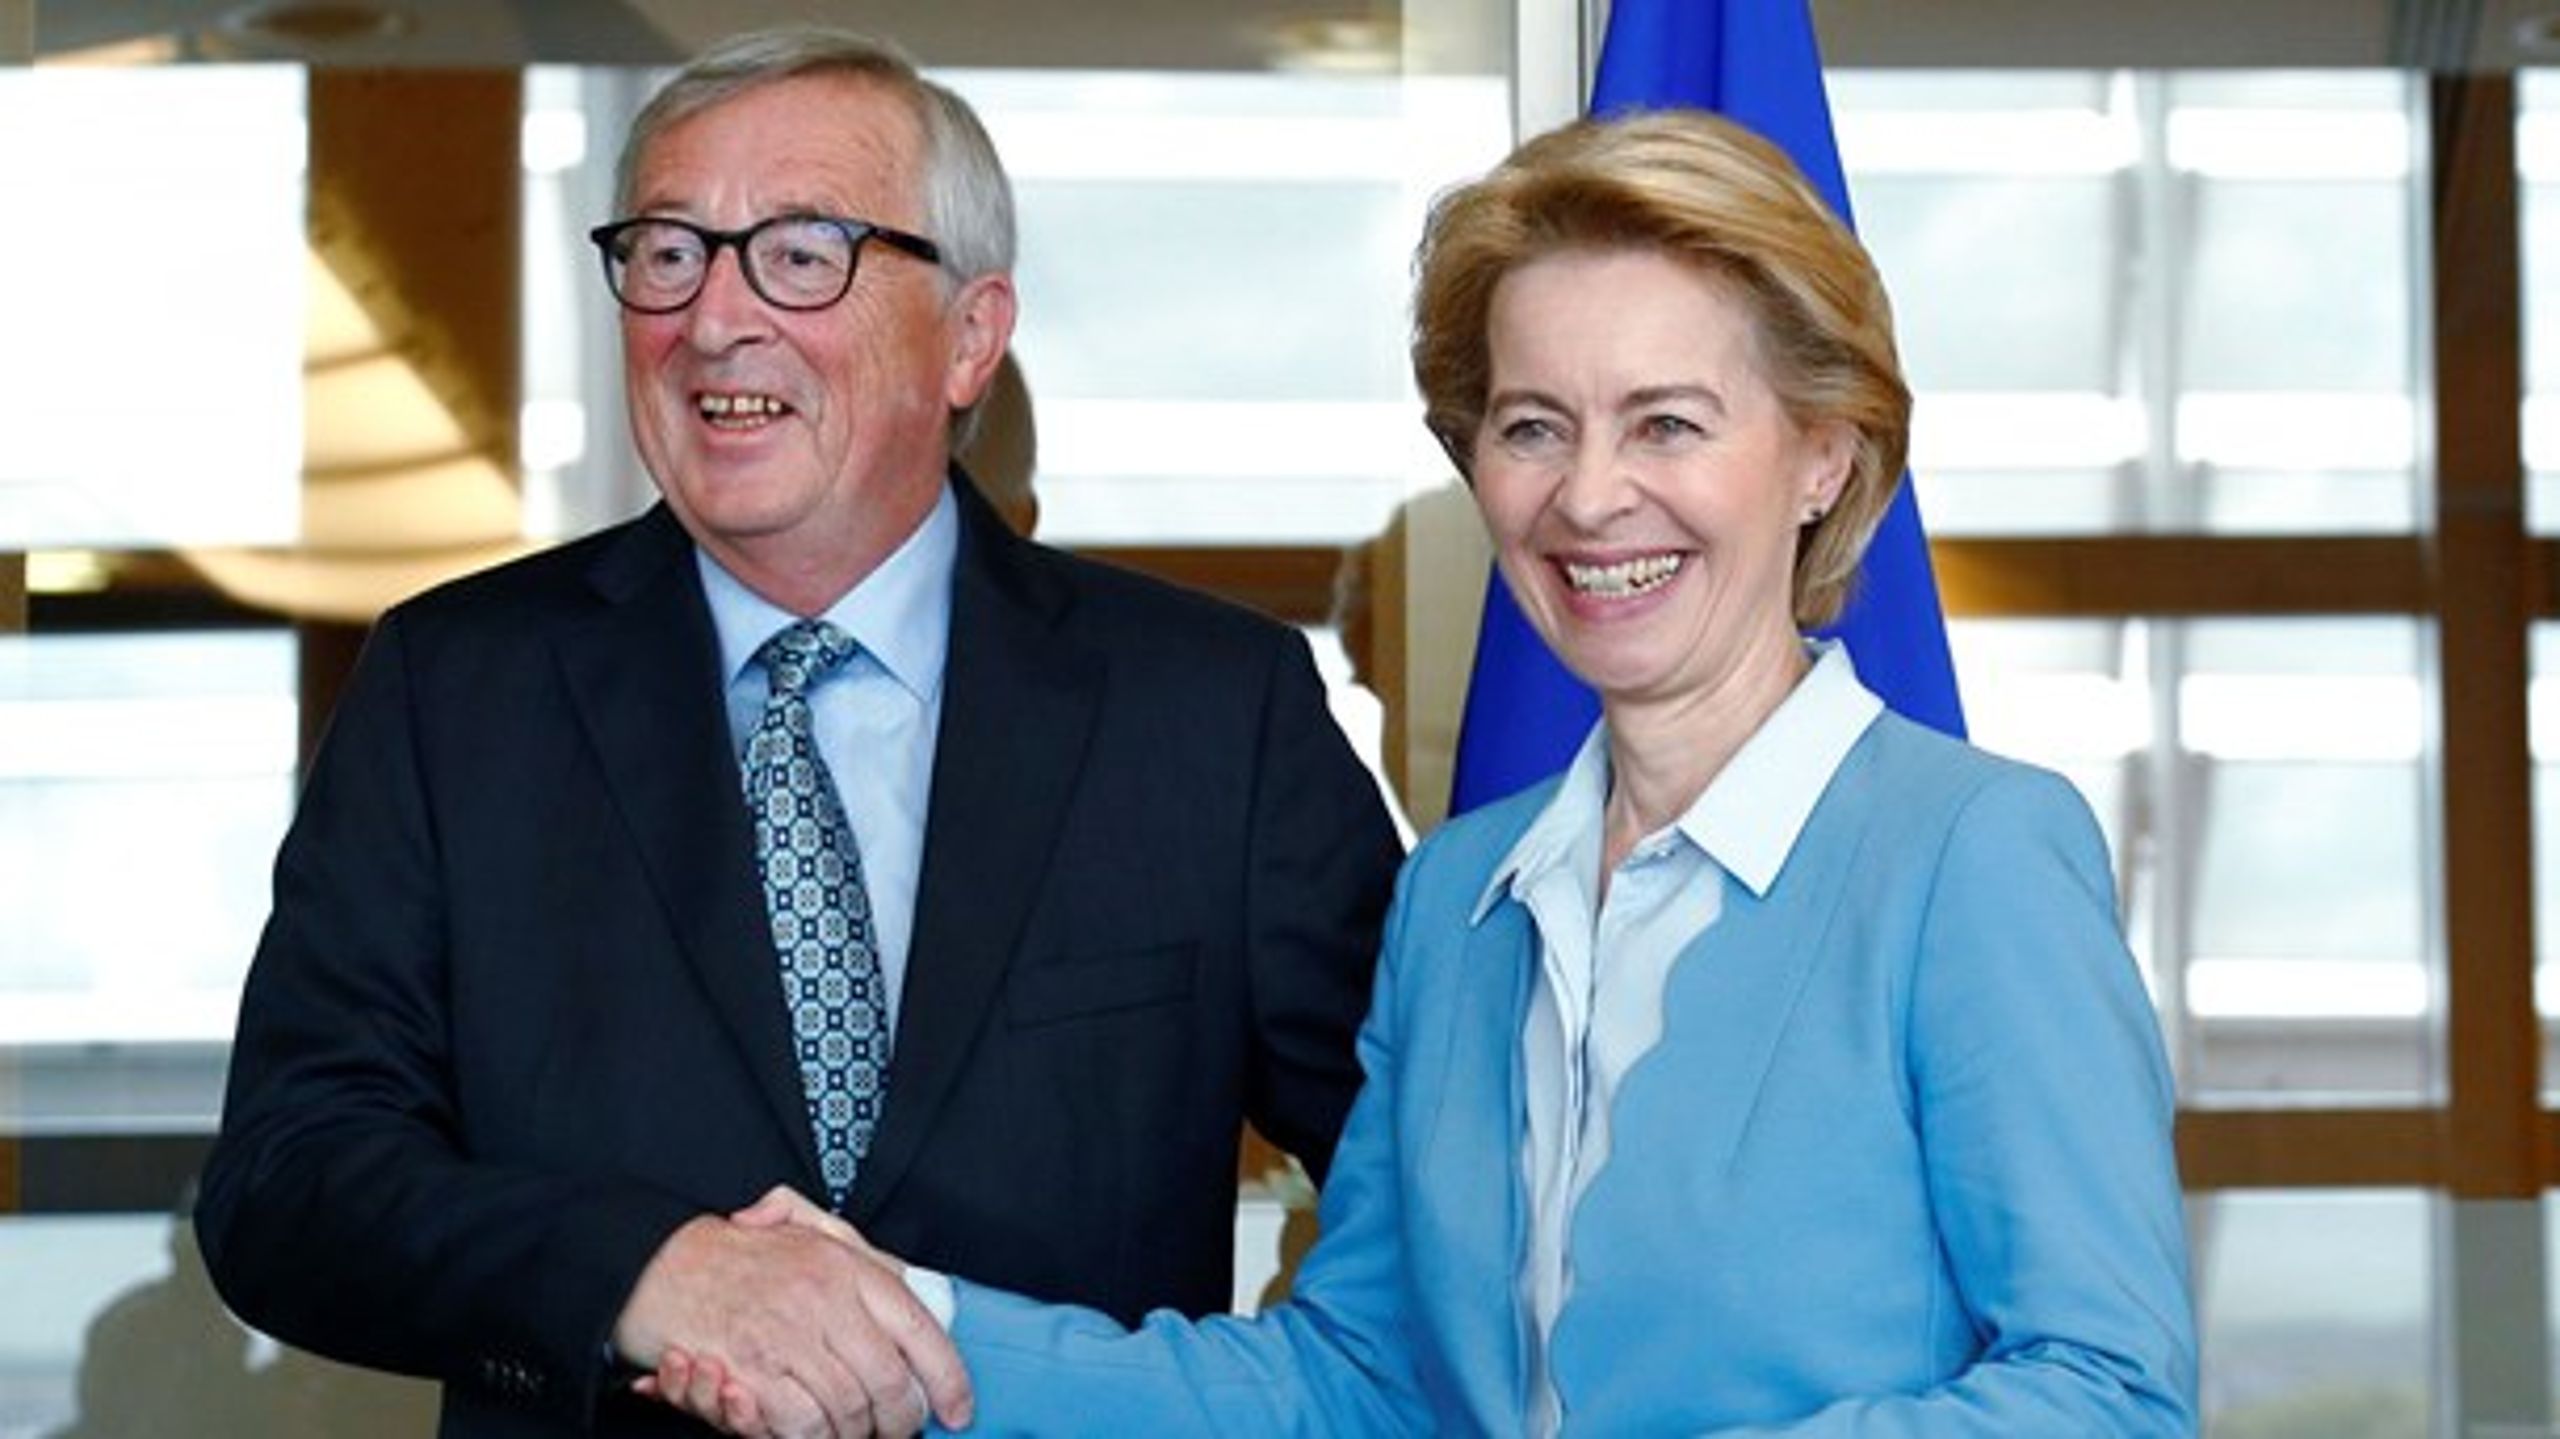 Ligestilling&nbsp;handler om at "<i>walk the talk</i>". Og det har både Jean-Claude Juncker og Ursula von der Leyen vist vilje og evne til, skriver Stina Soewarta.